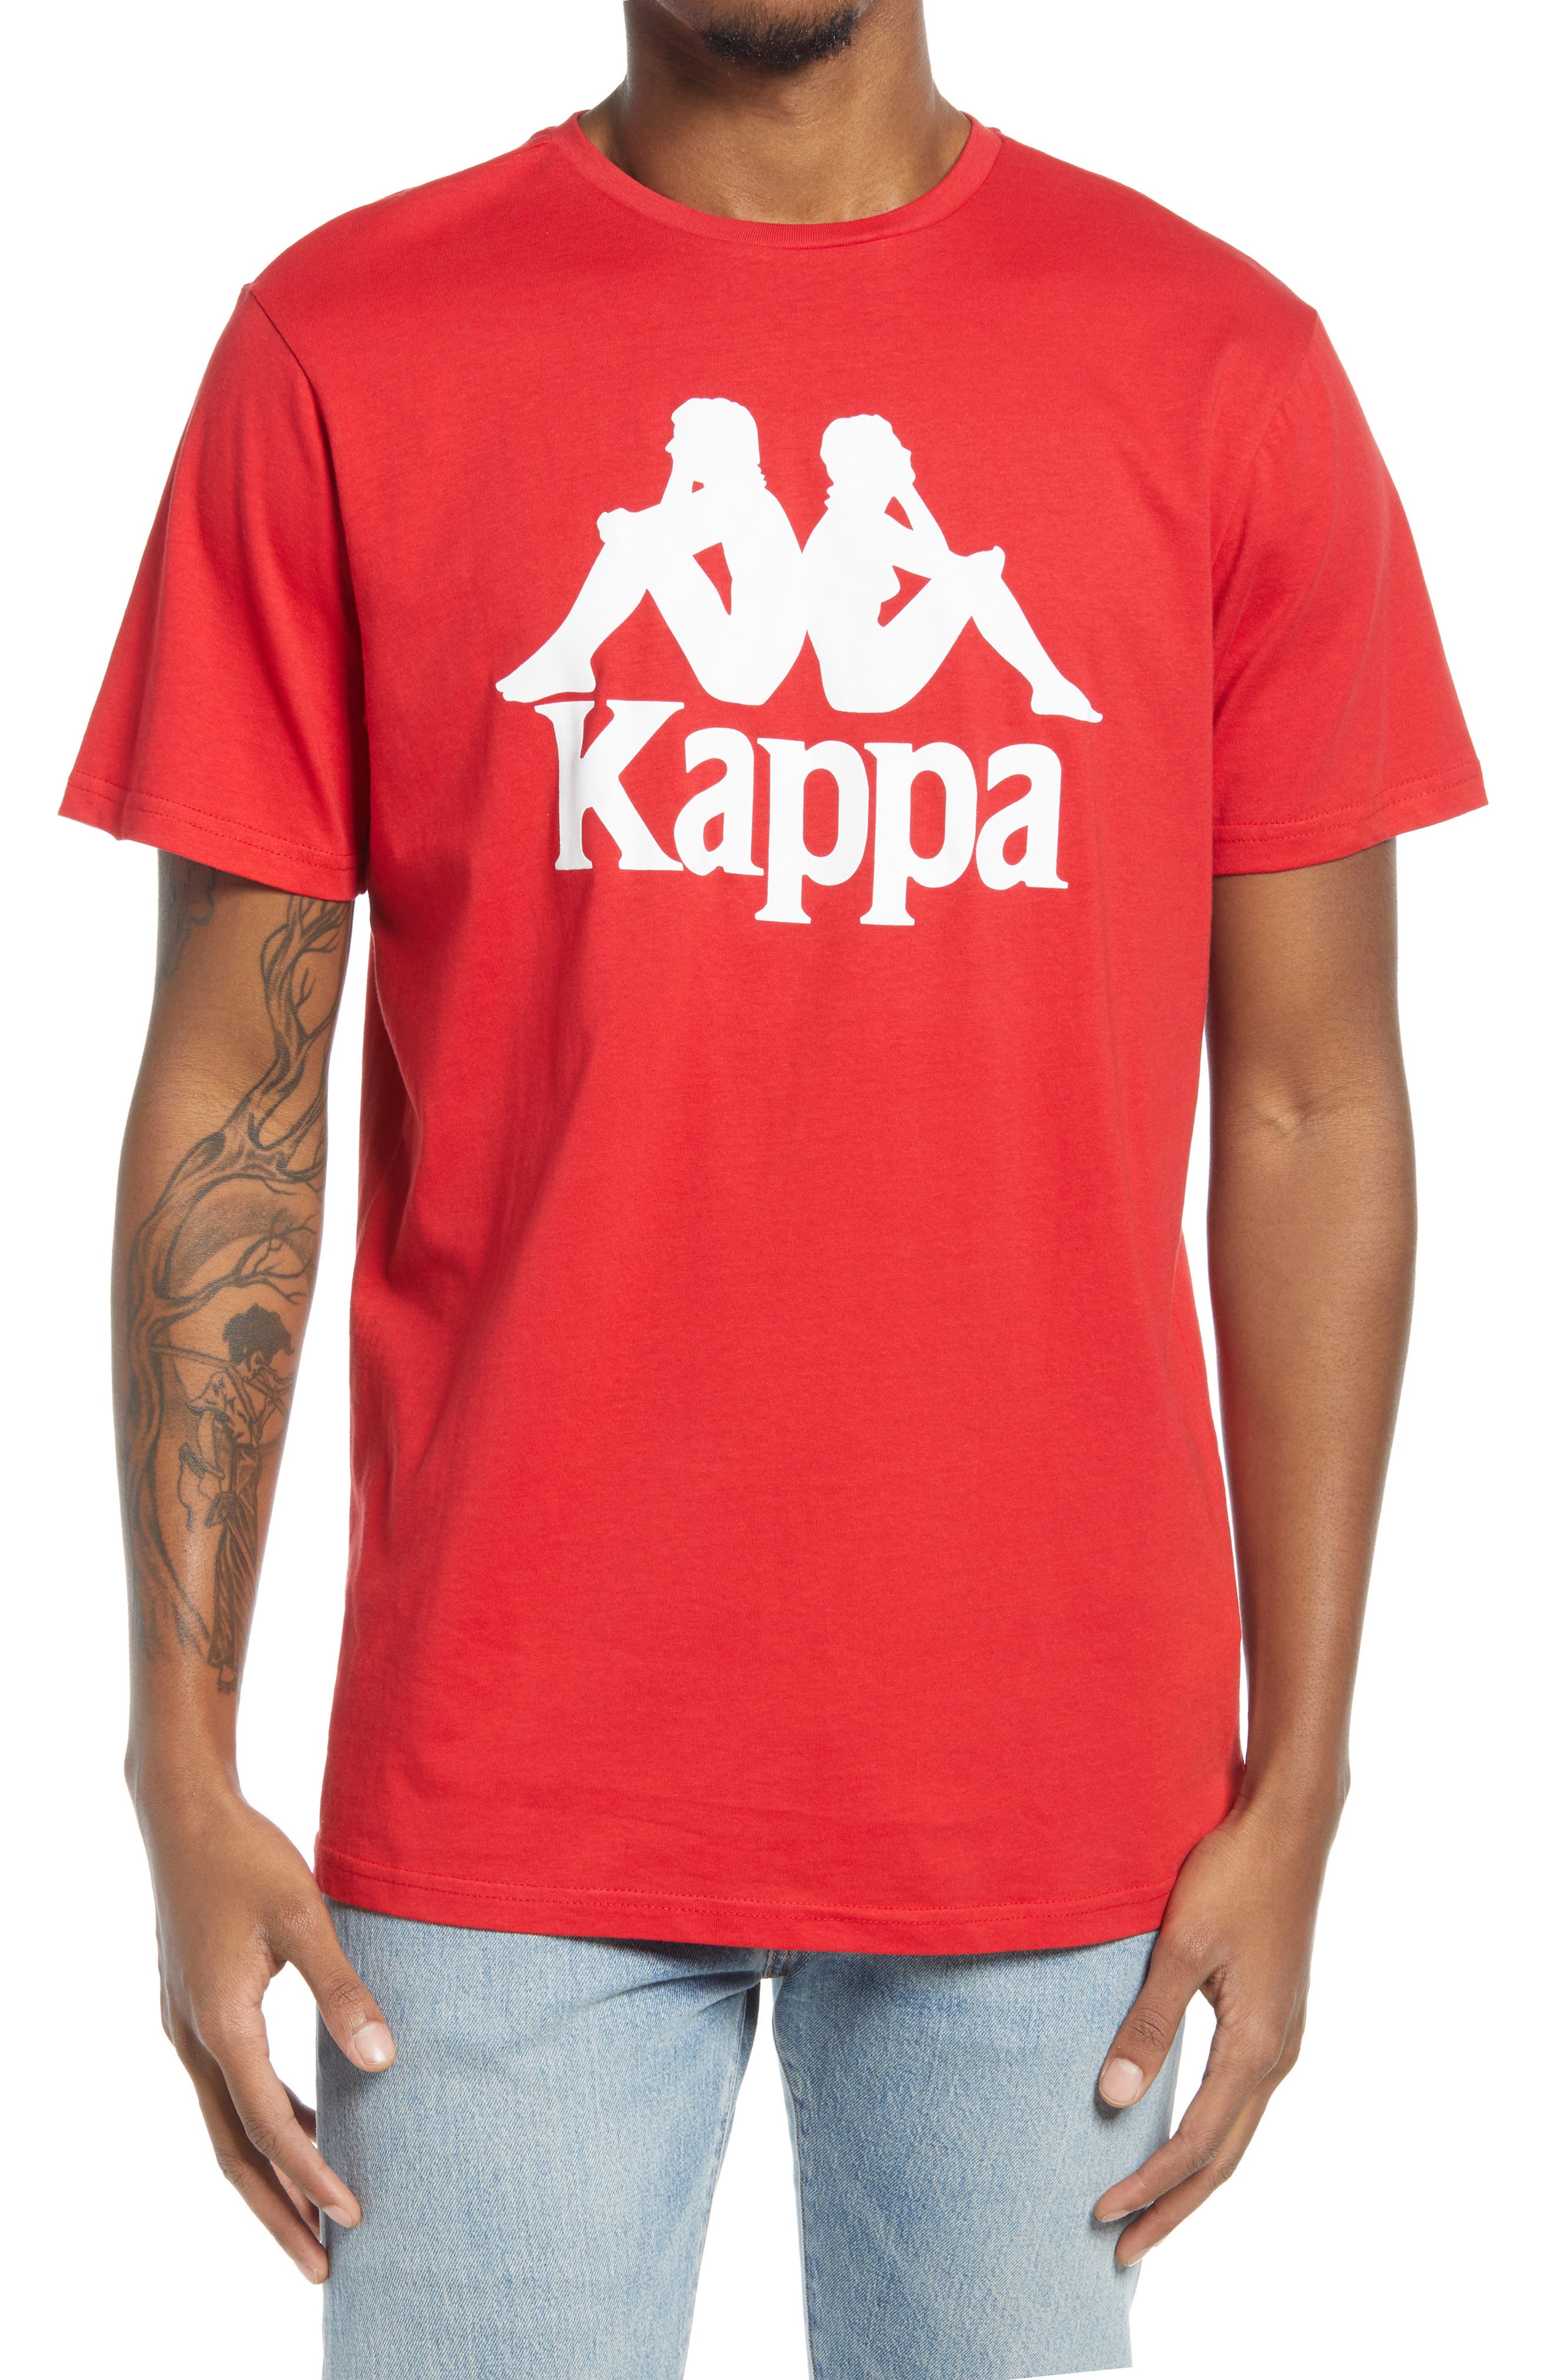 kappa sports apparel